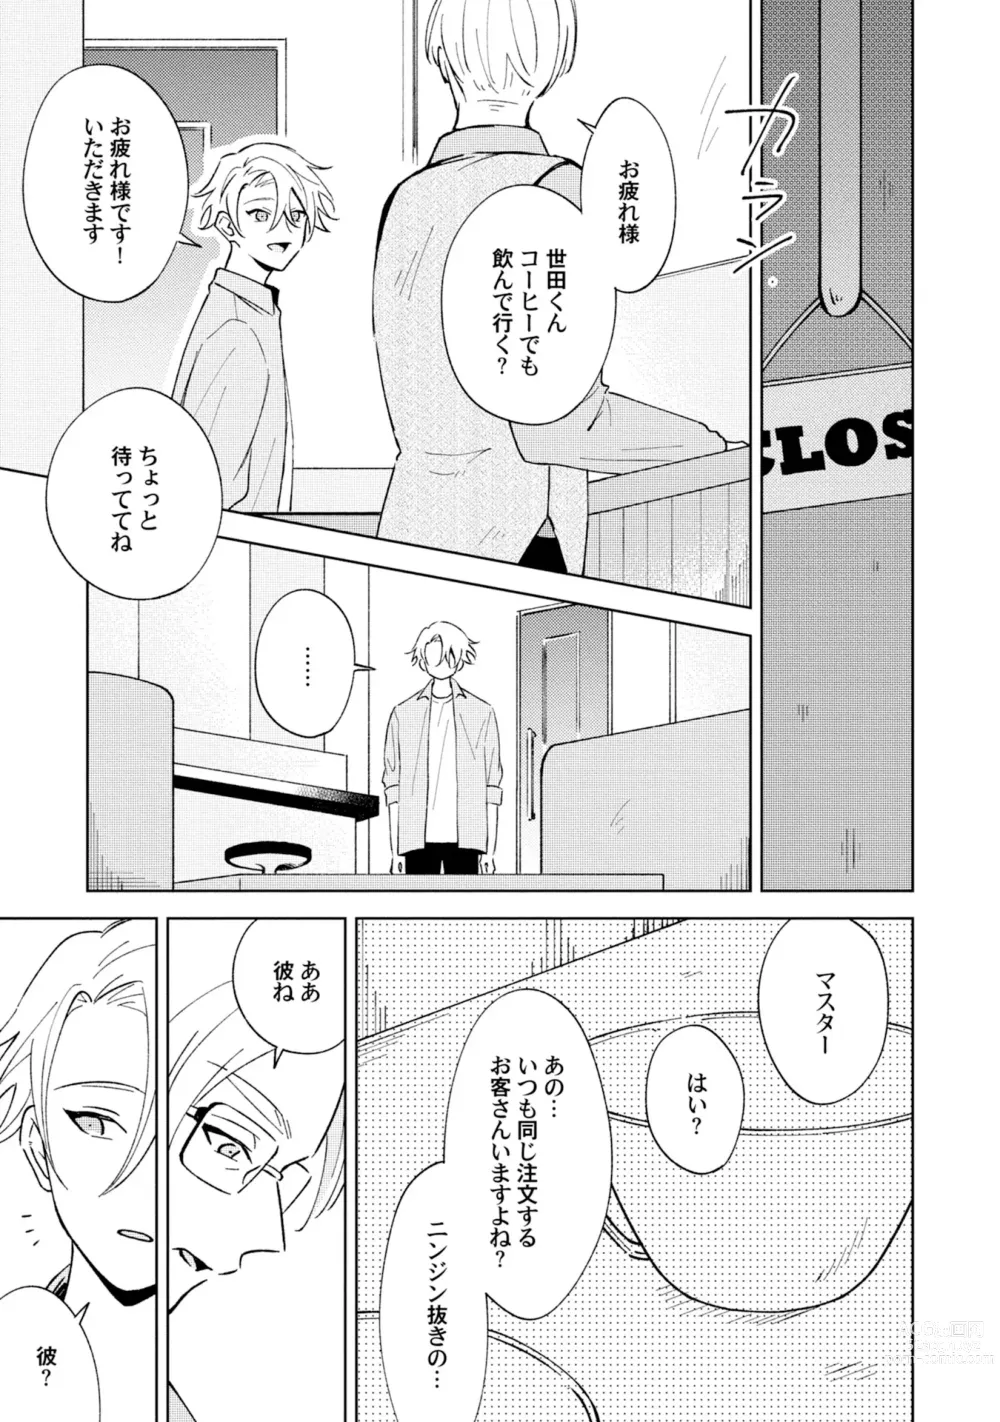 Page 9 of manga Toho 3-byou no Trouble Love Room 2